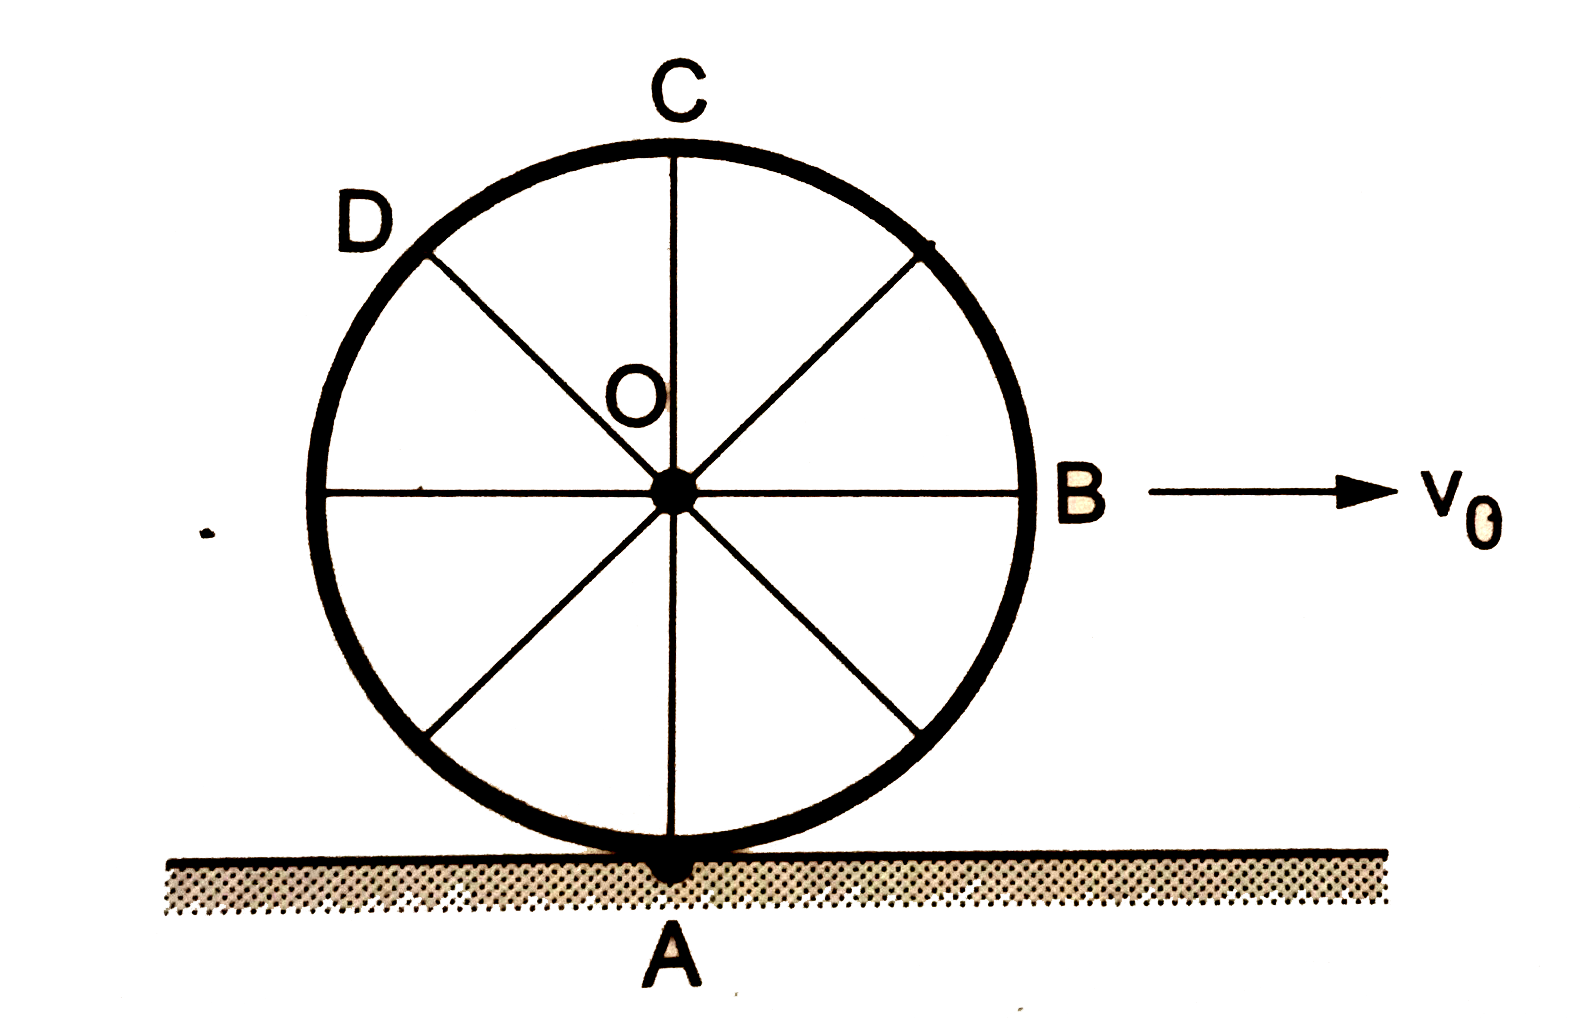 चित्र में एक समतल सड़क पर एकसमान रेखीय चाल v(0) से गतिशील साइकिल का पहिया दिखाया गया है।